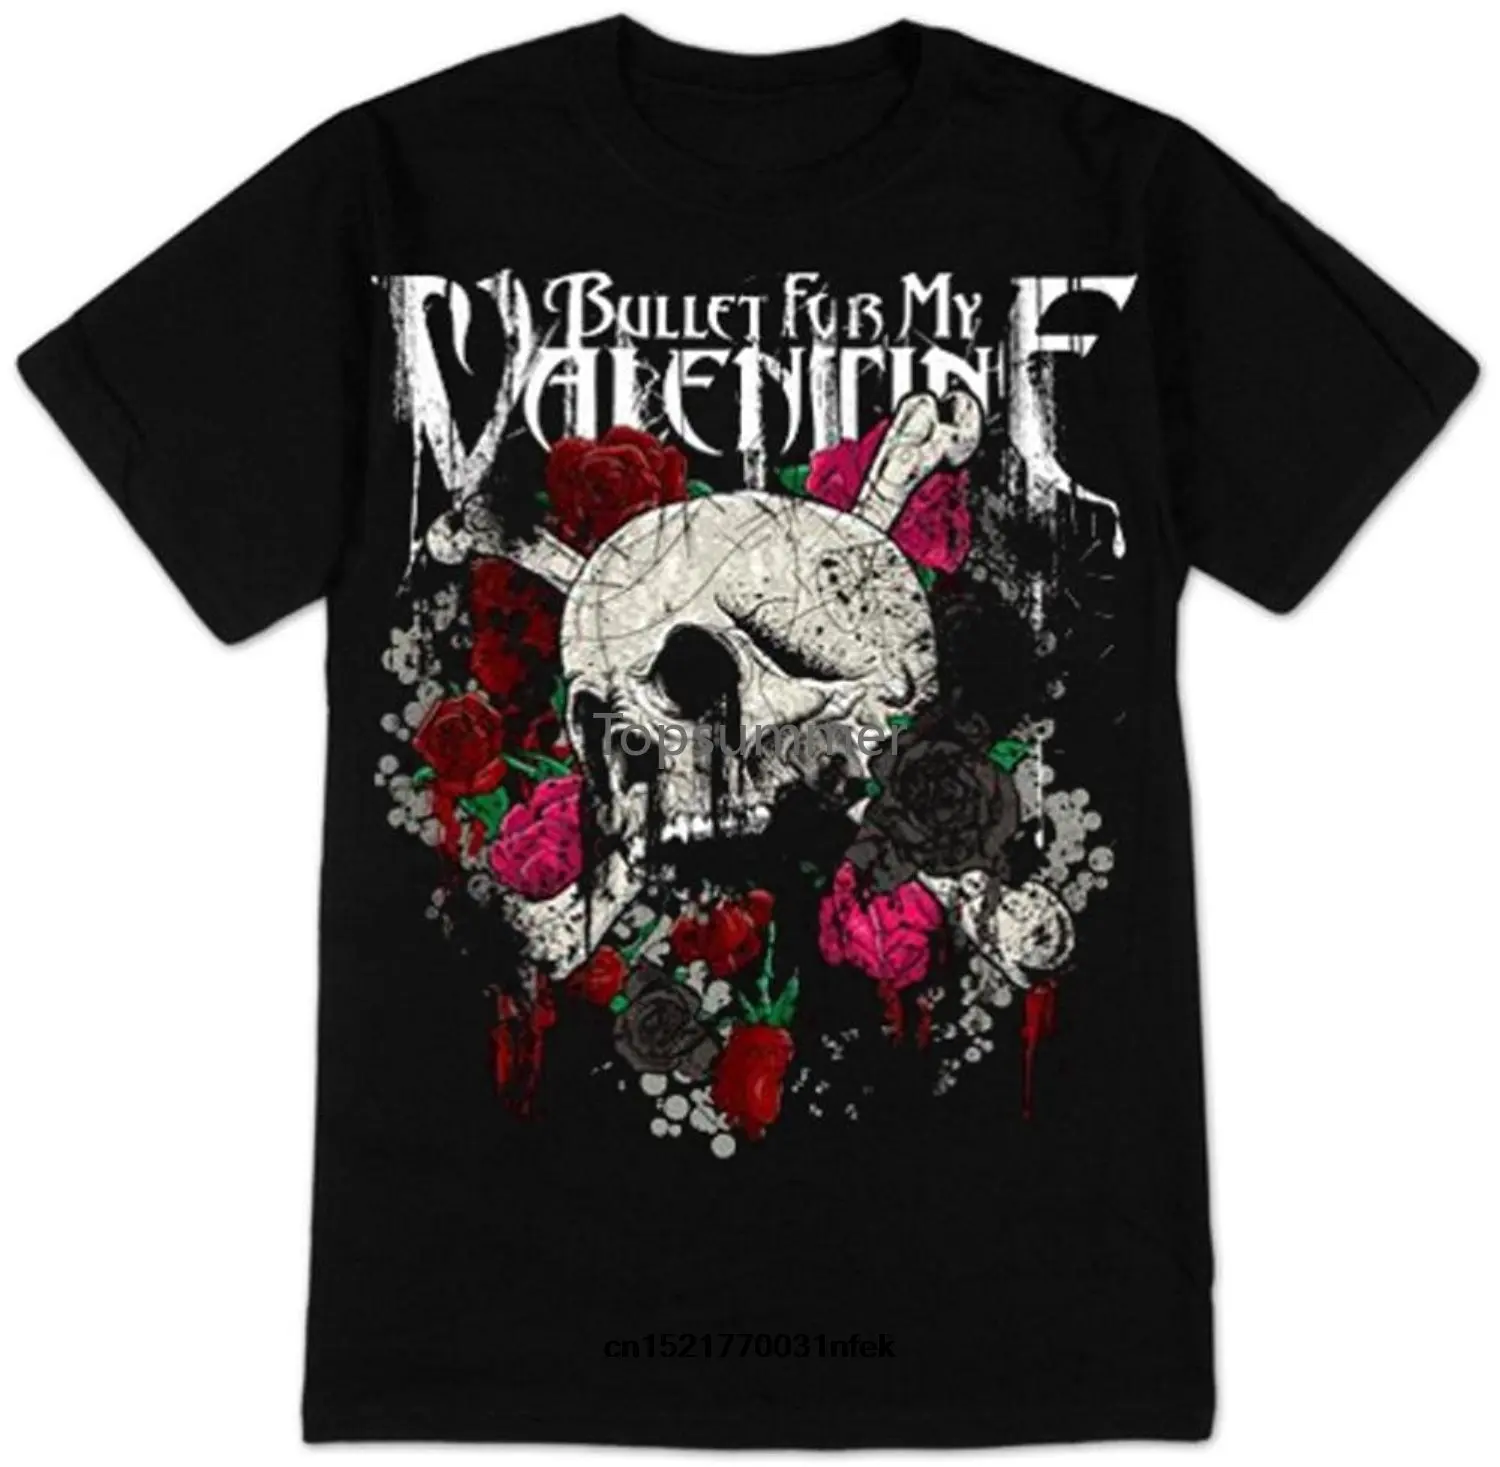 

Men T Shirt Old Glory S Bullet For My Valentine - Skull Roses Funny T-Shirt Novelty Tshirt Women